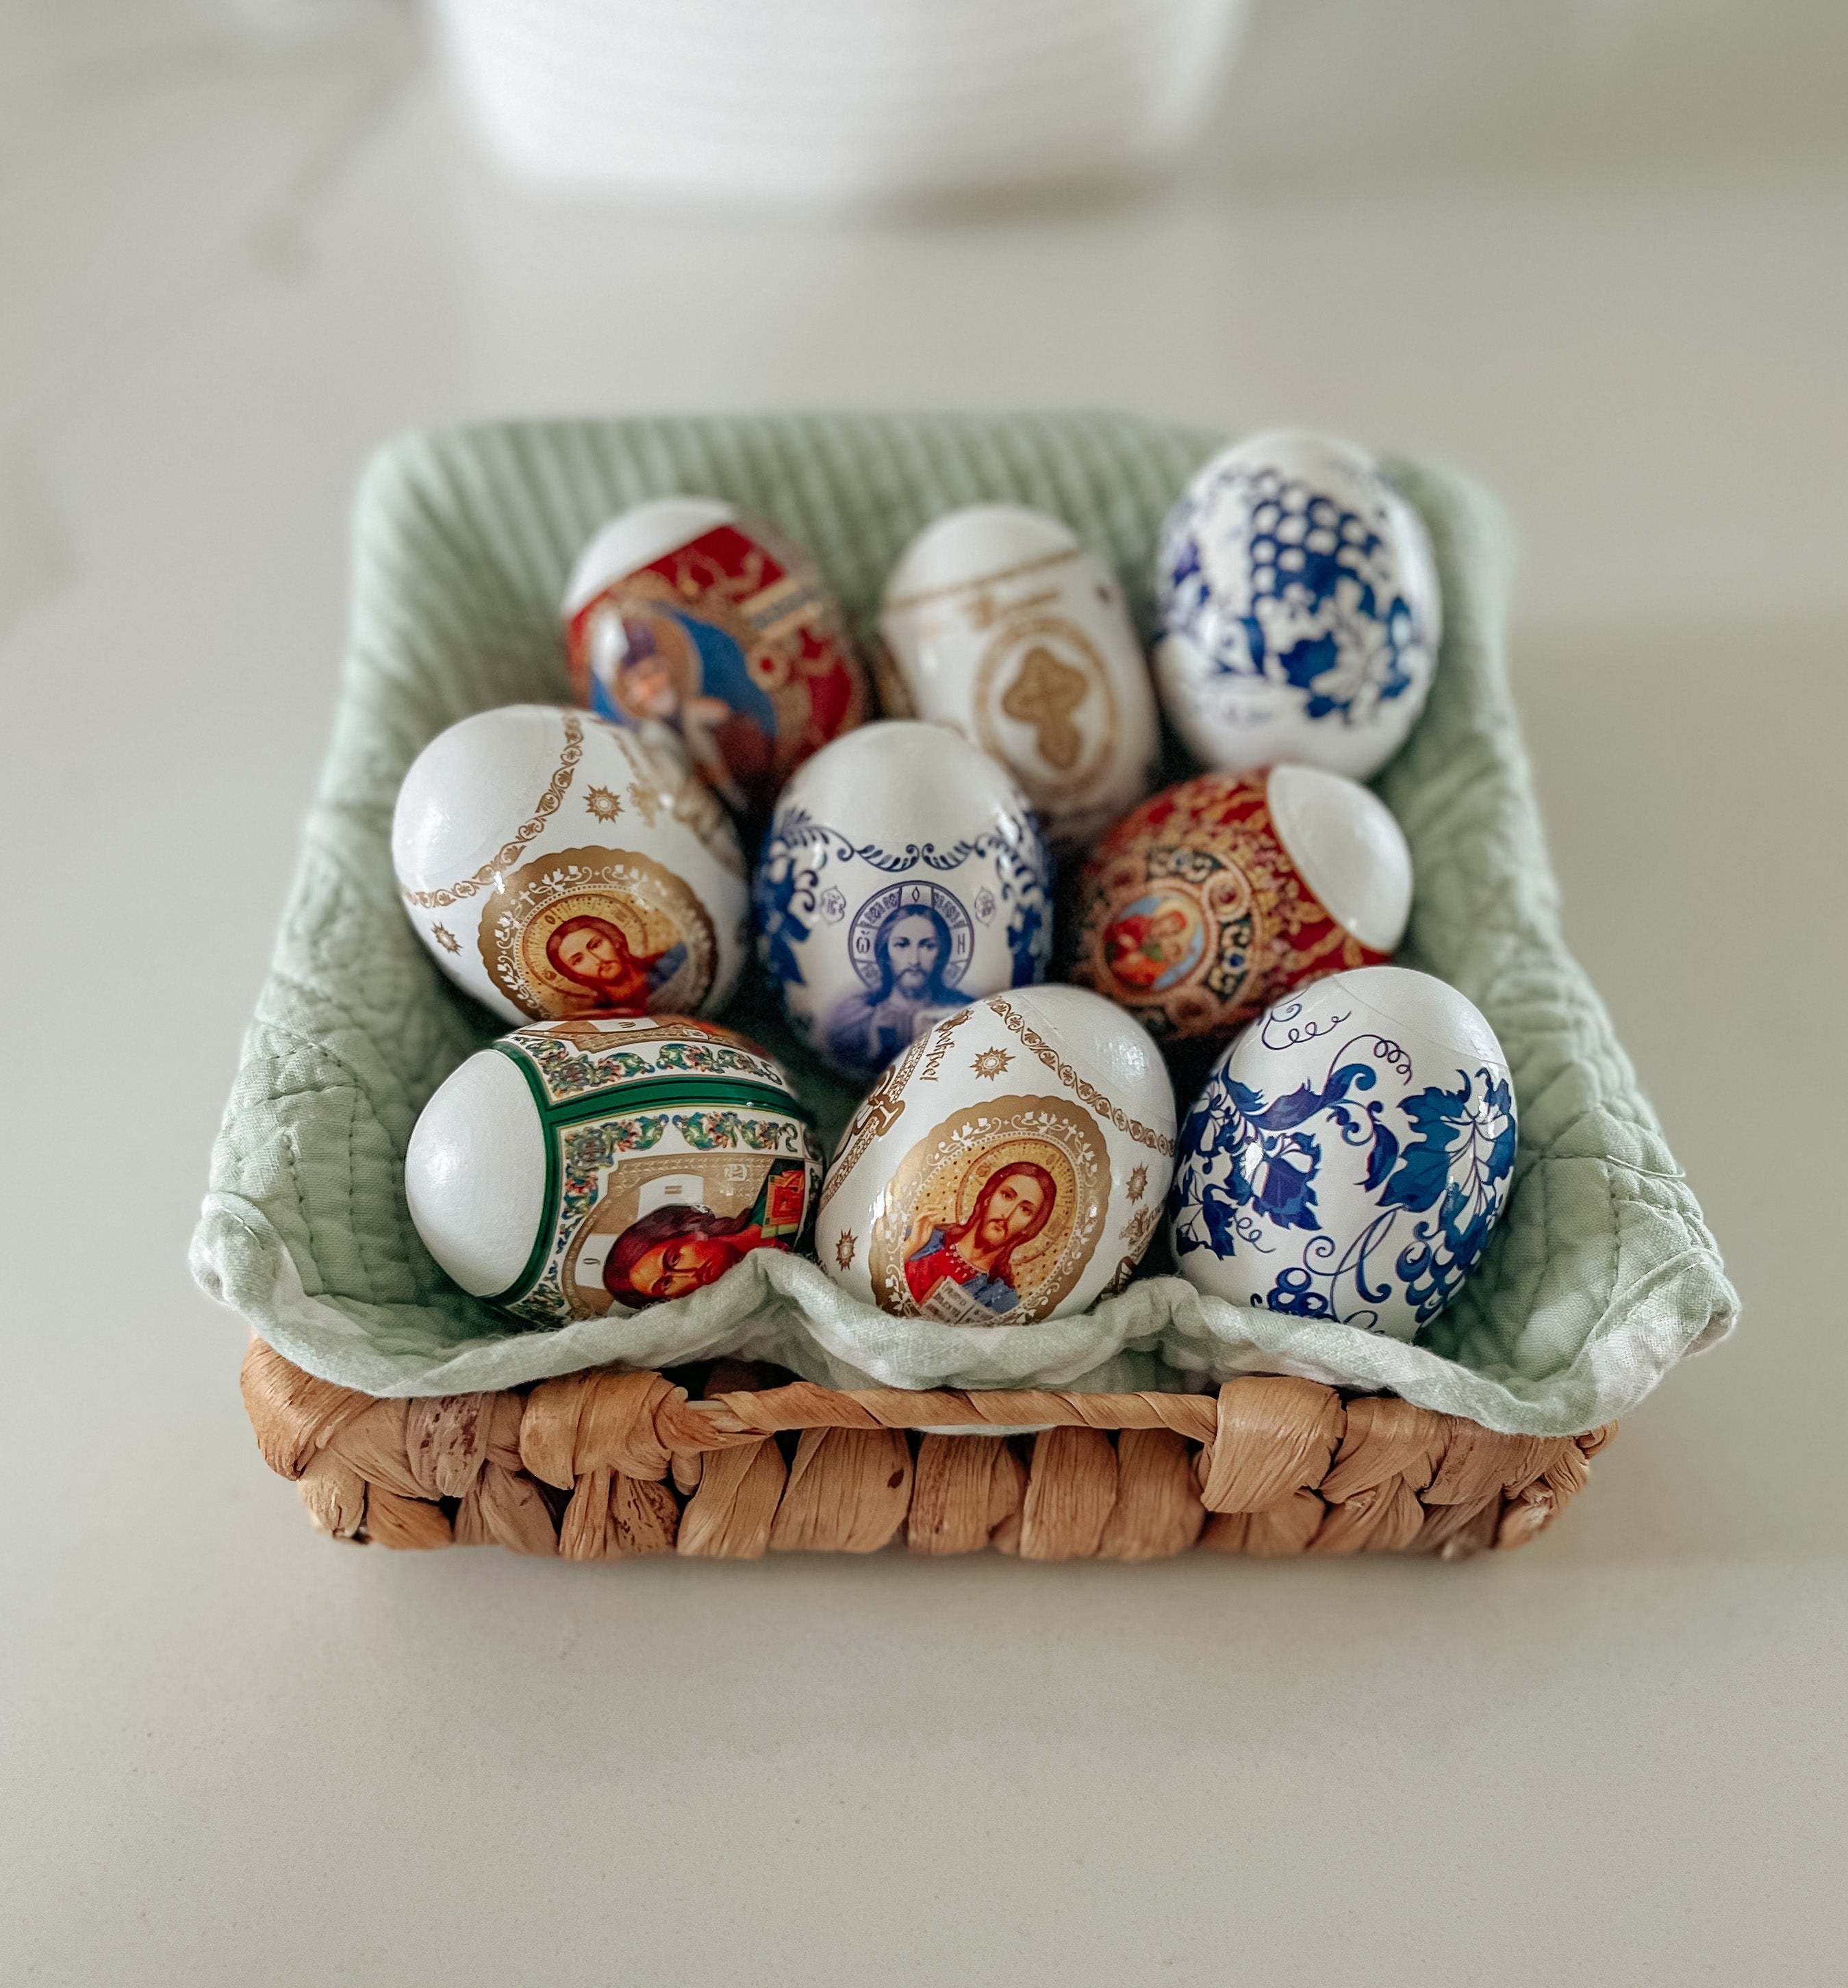 DIY Pysanky Easter Eggs